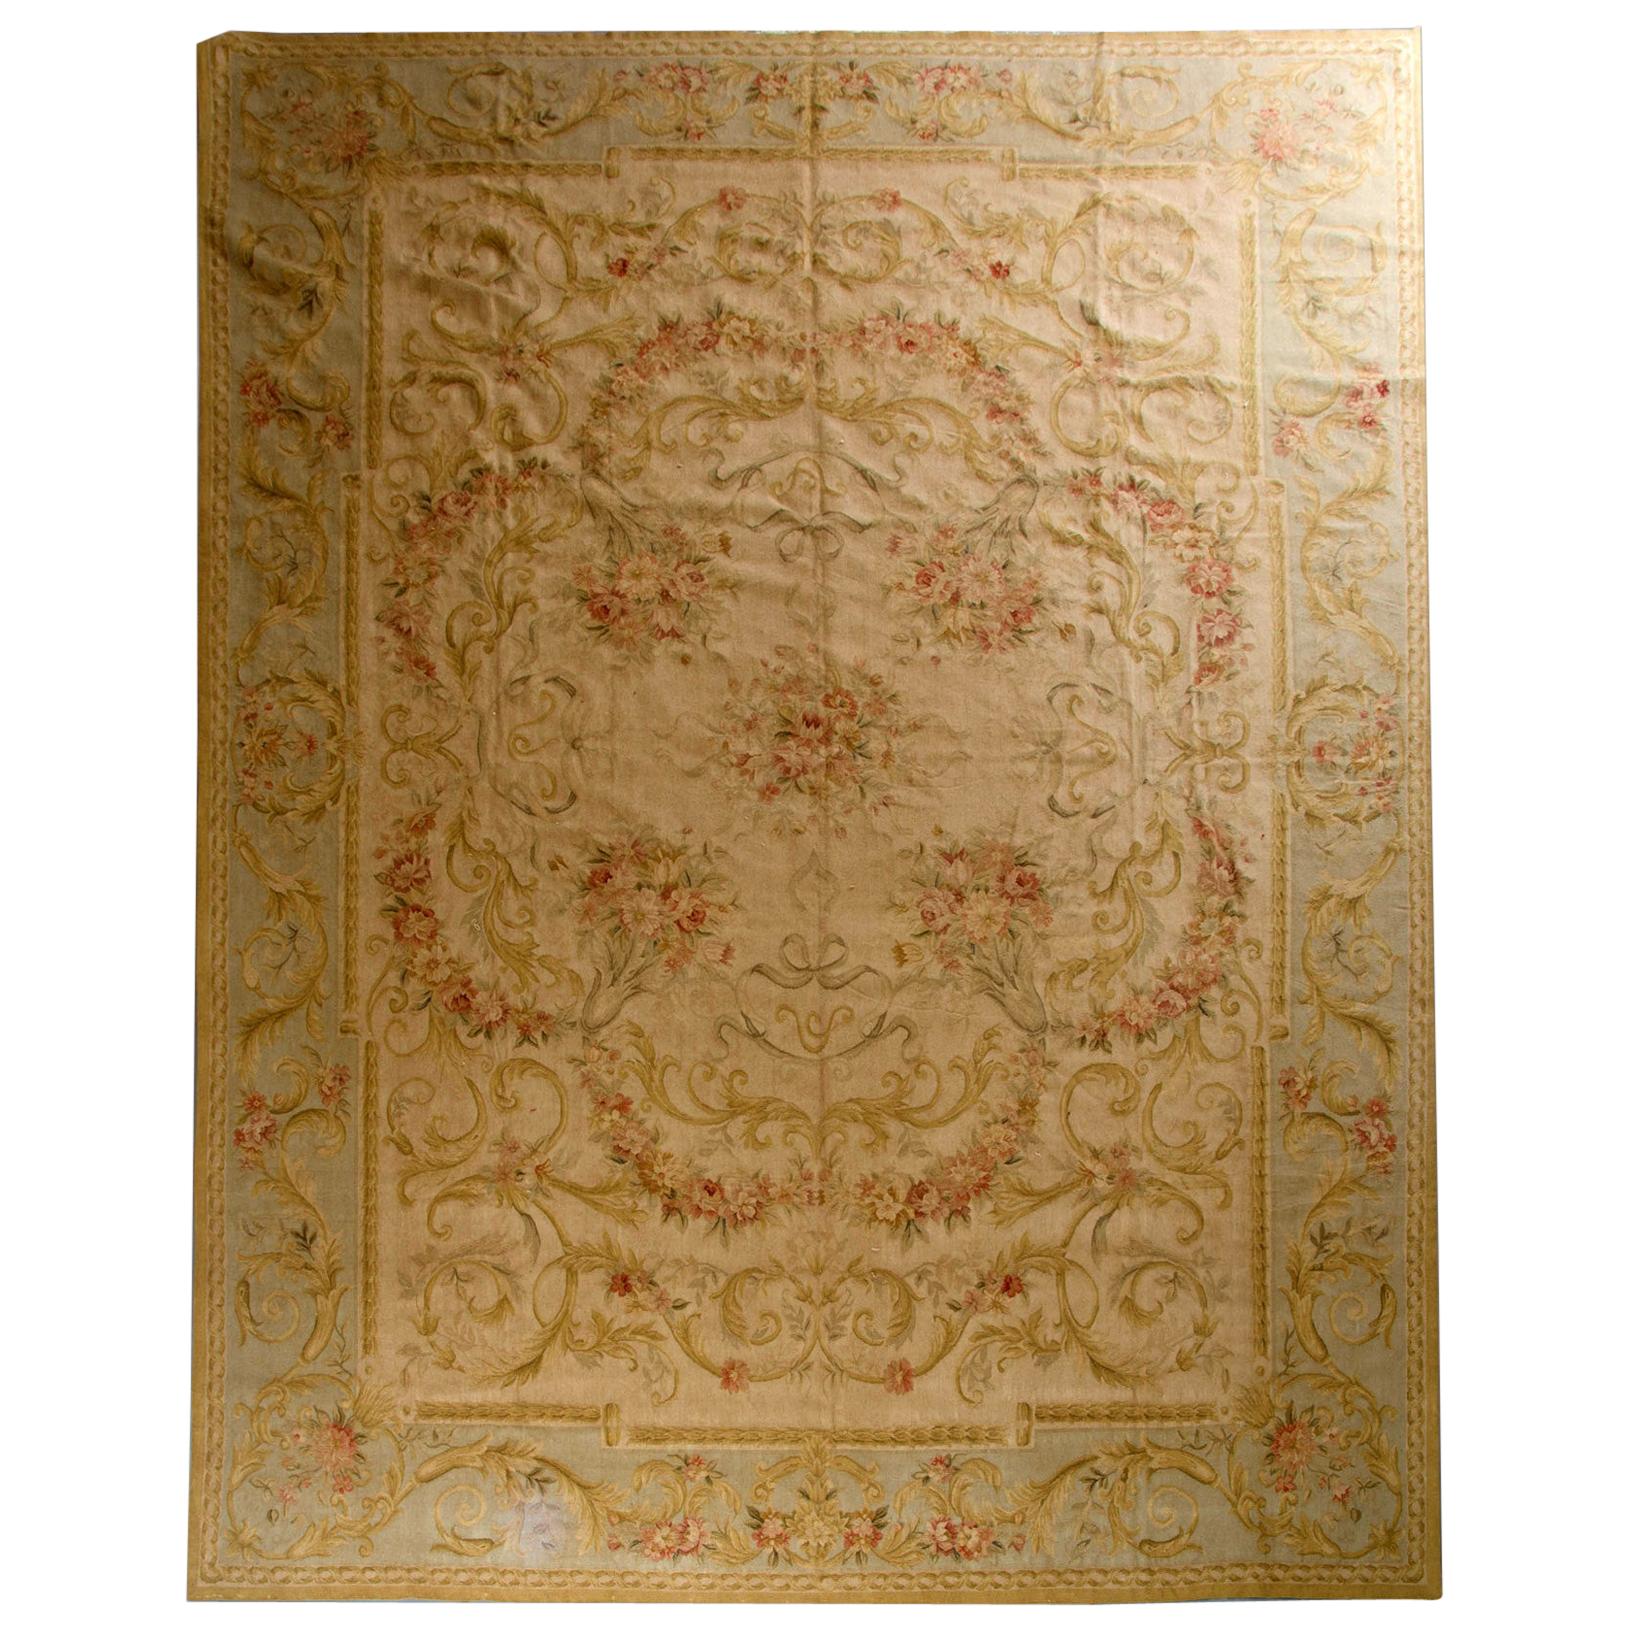 Chinesischer Gobelinstickerei-Teppich im Aubusson-Stil, Chinesisch